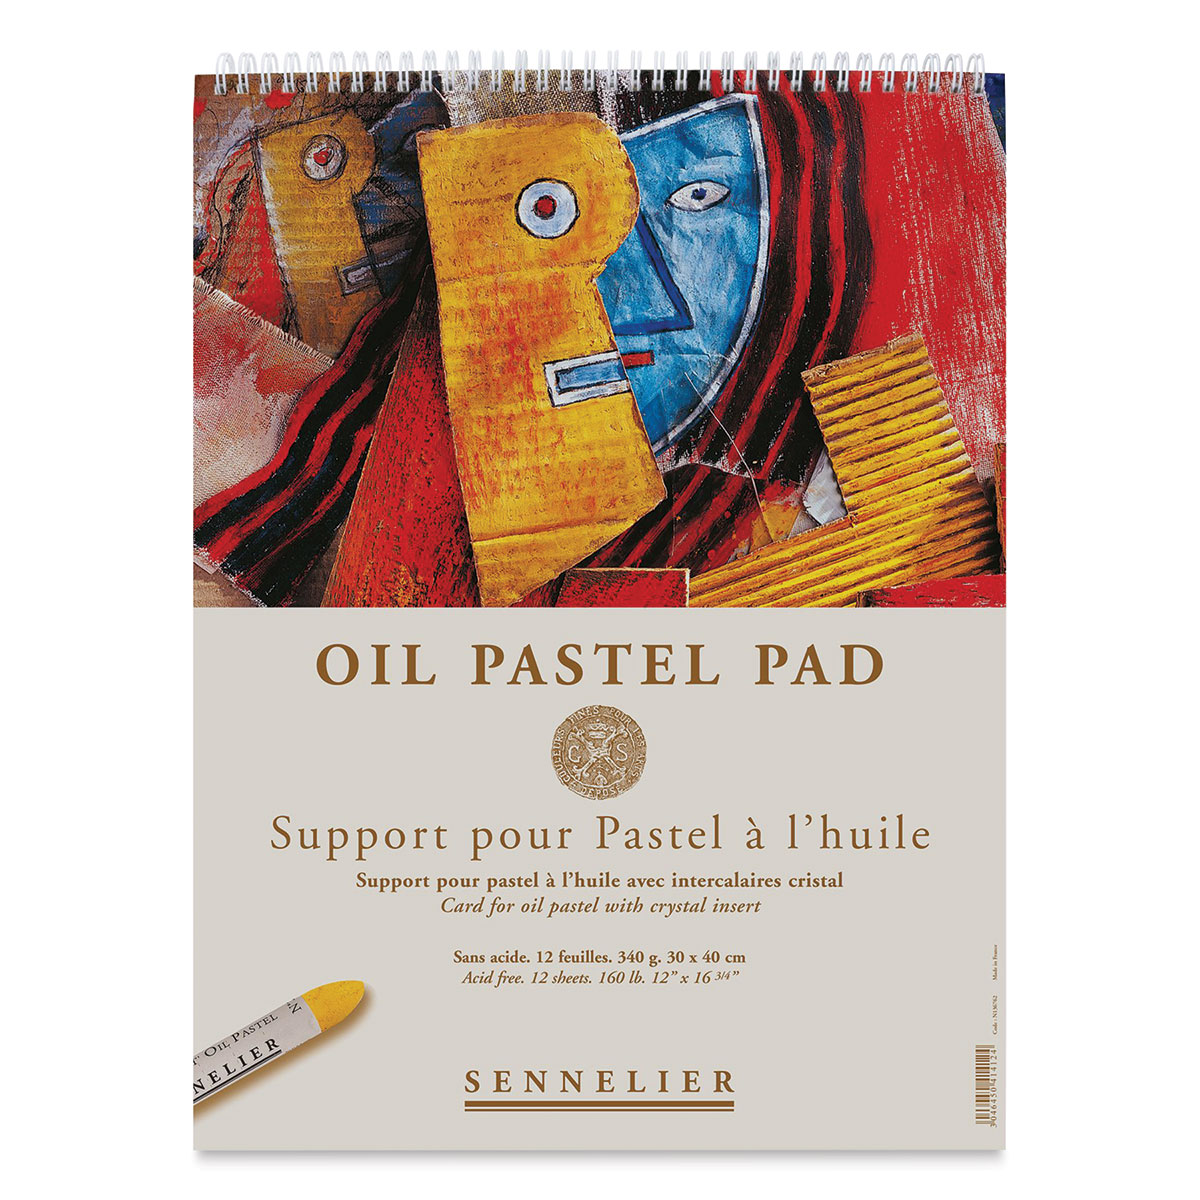 Oil Pastels: Sennelier Oil Pastels (review)